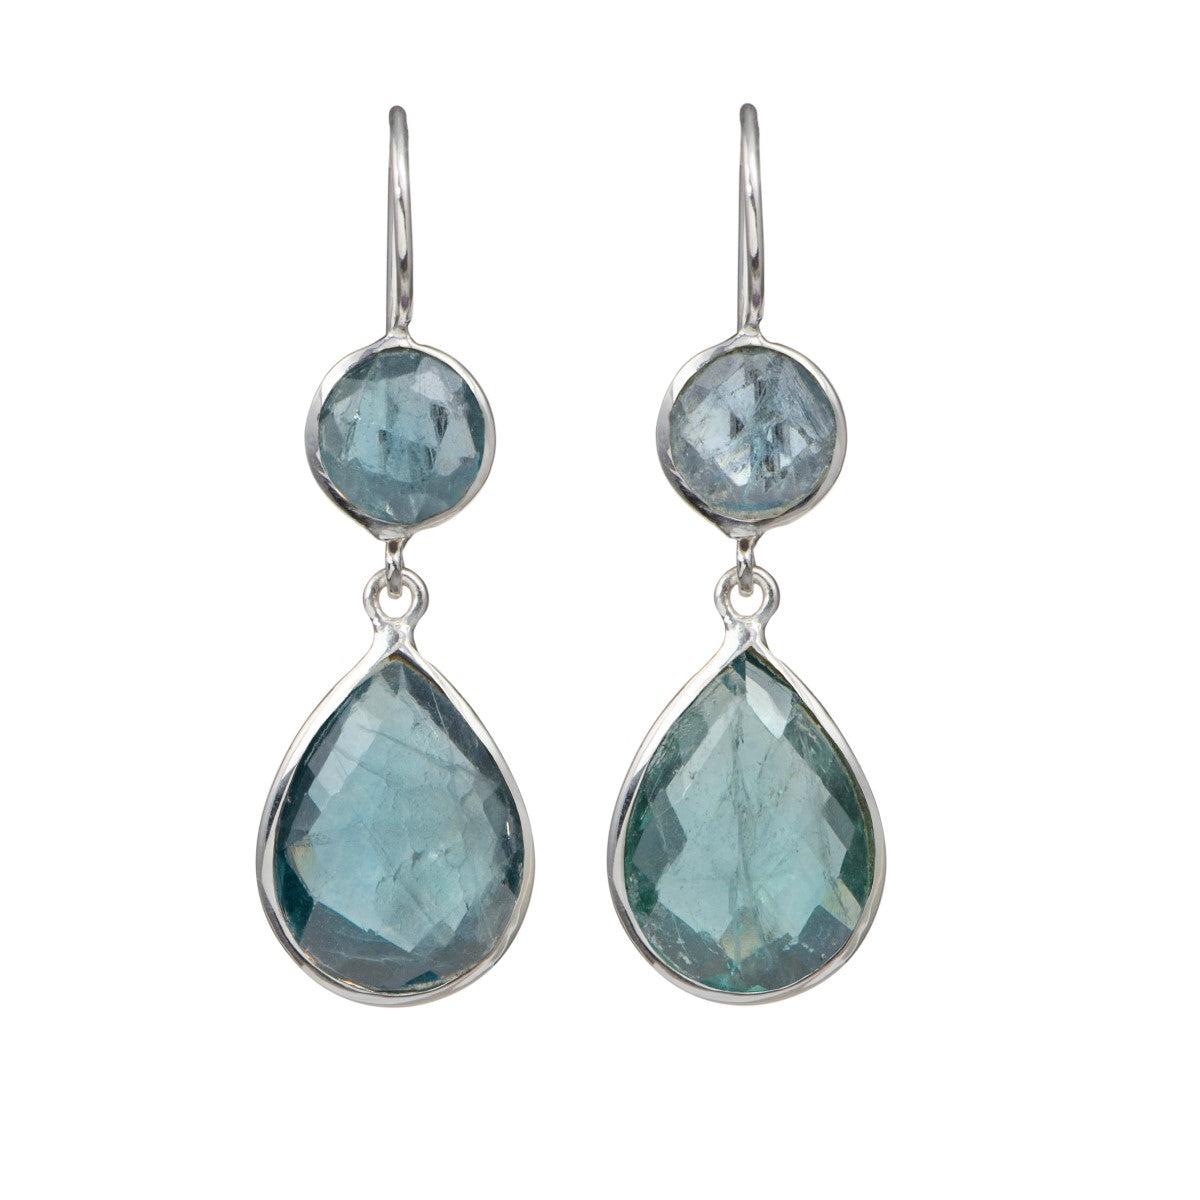 Apatite Gemstone Two Stone Earrings in Sterling Silver - Teardrop